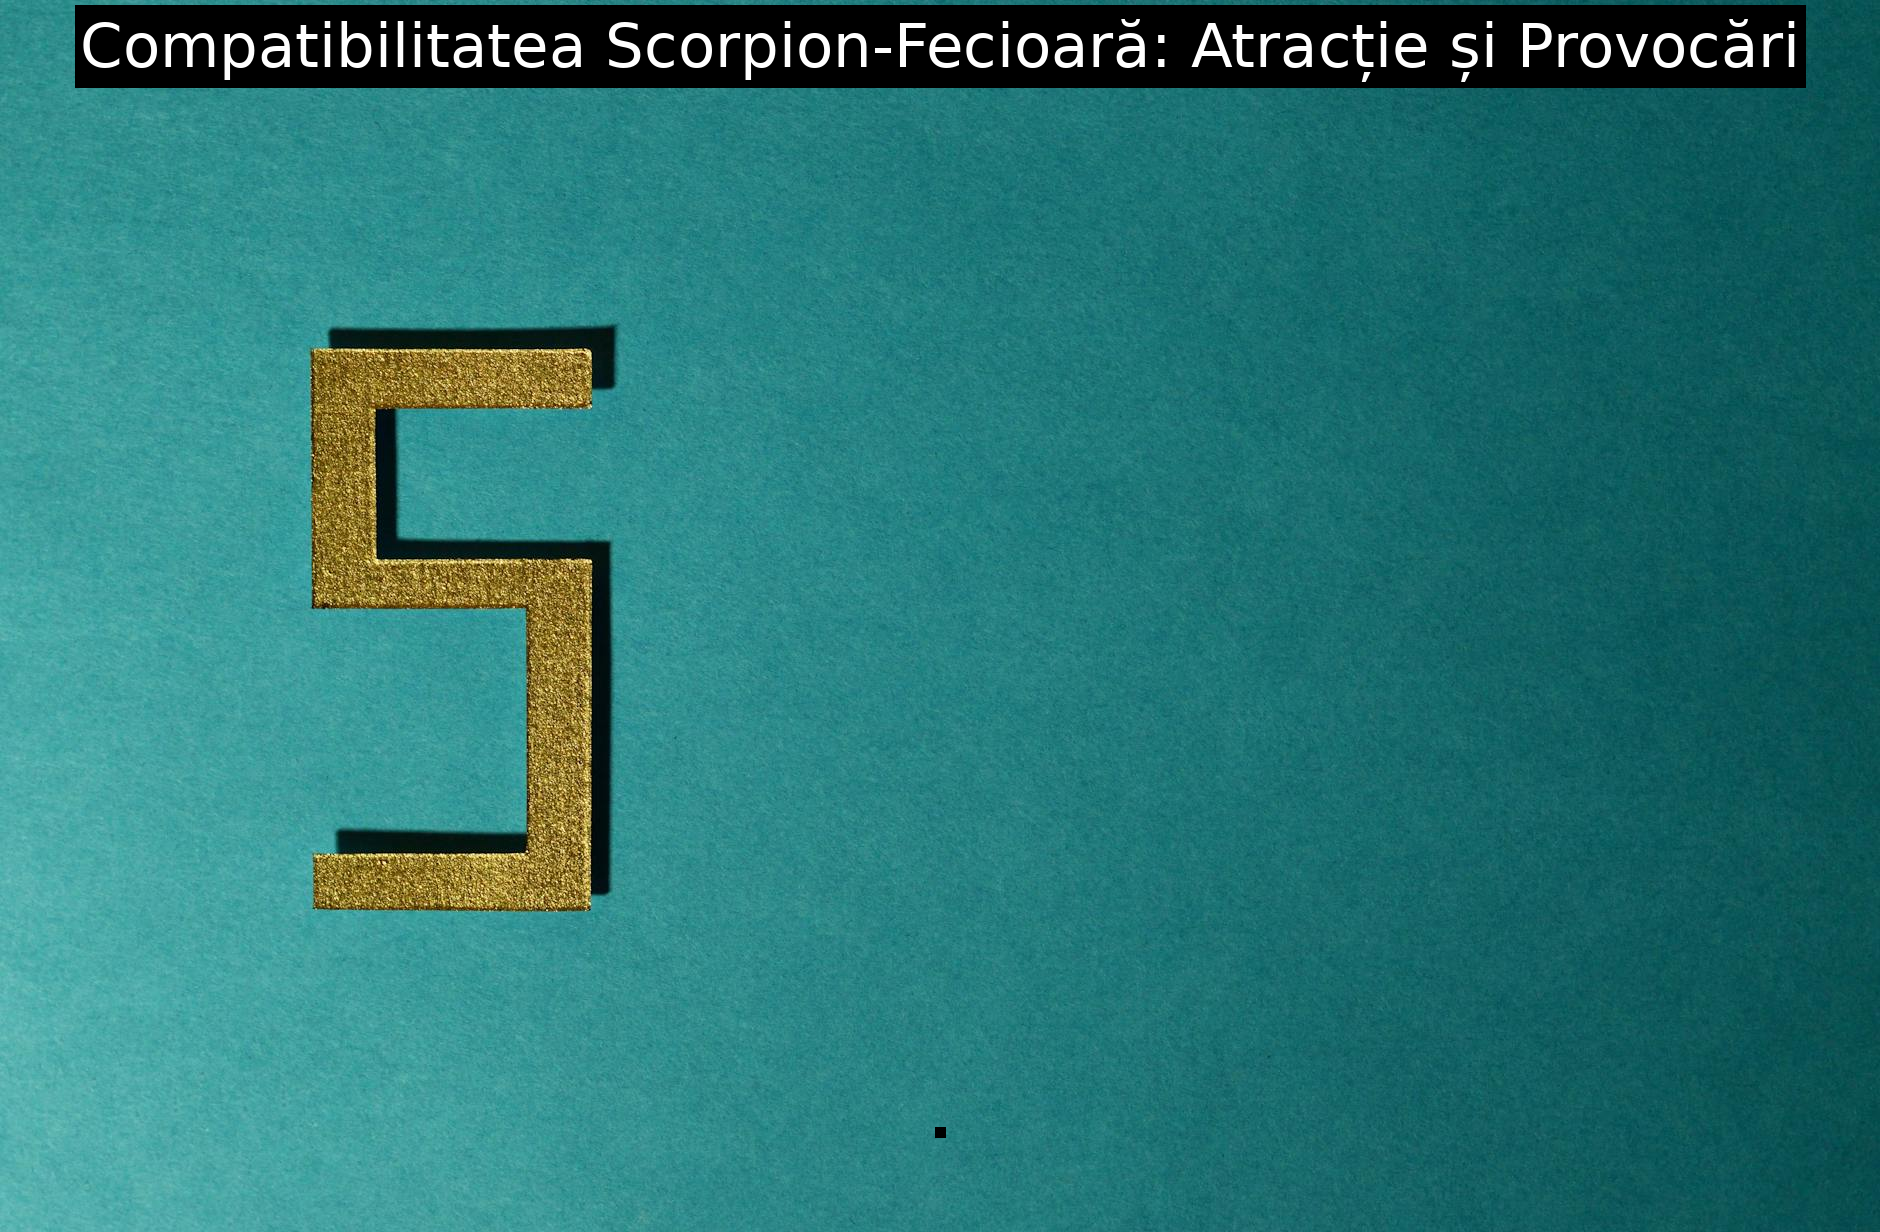 Compatibilitatea Scorpion-Fecioară: Atracție și Provocări